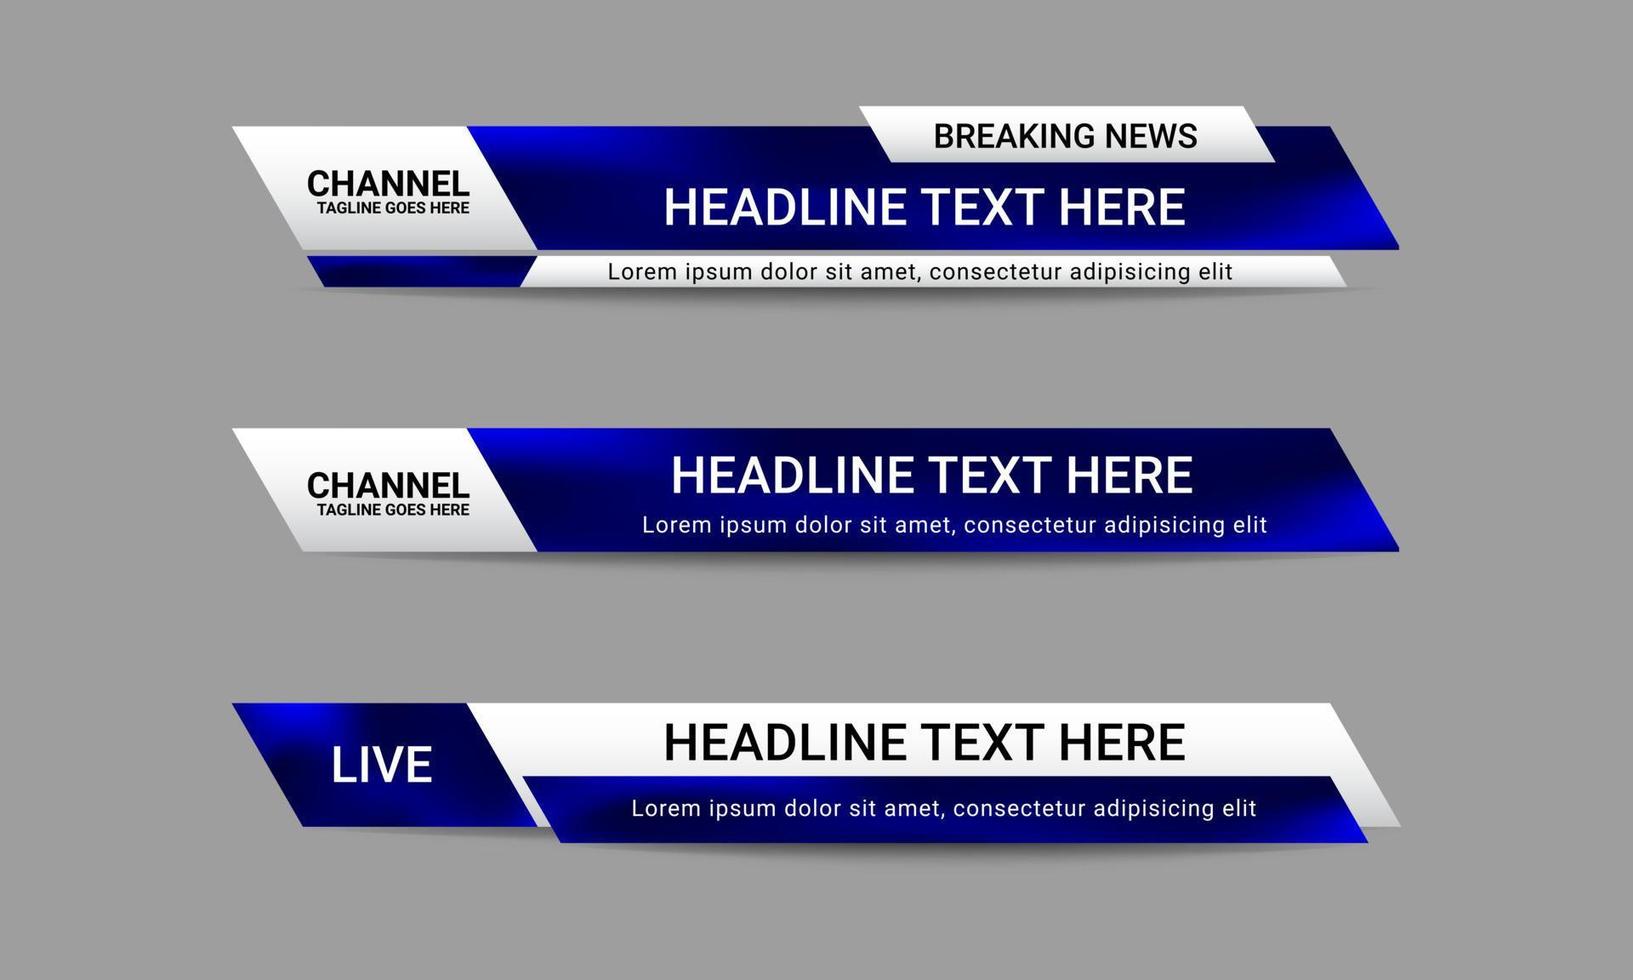 conjunto de plantillas de banner de tercio inferior de noticias de difusión para canales de televisión, video y medios. vector de diseño de diseño de barra de título futurista